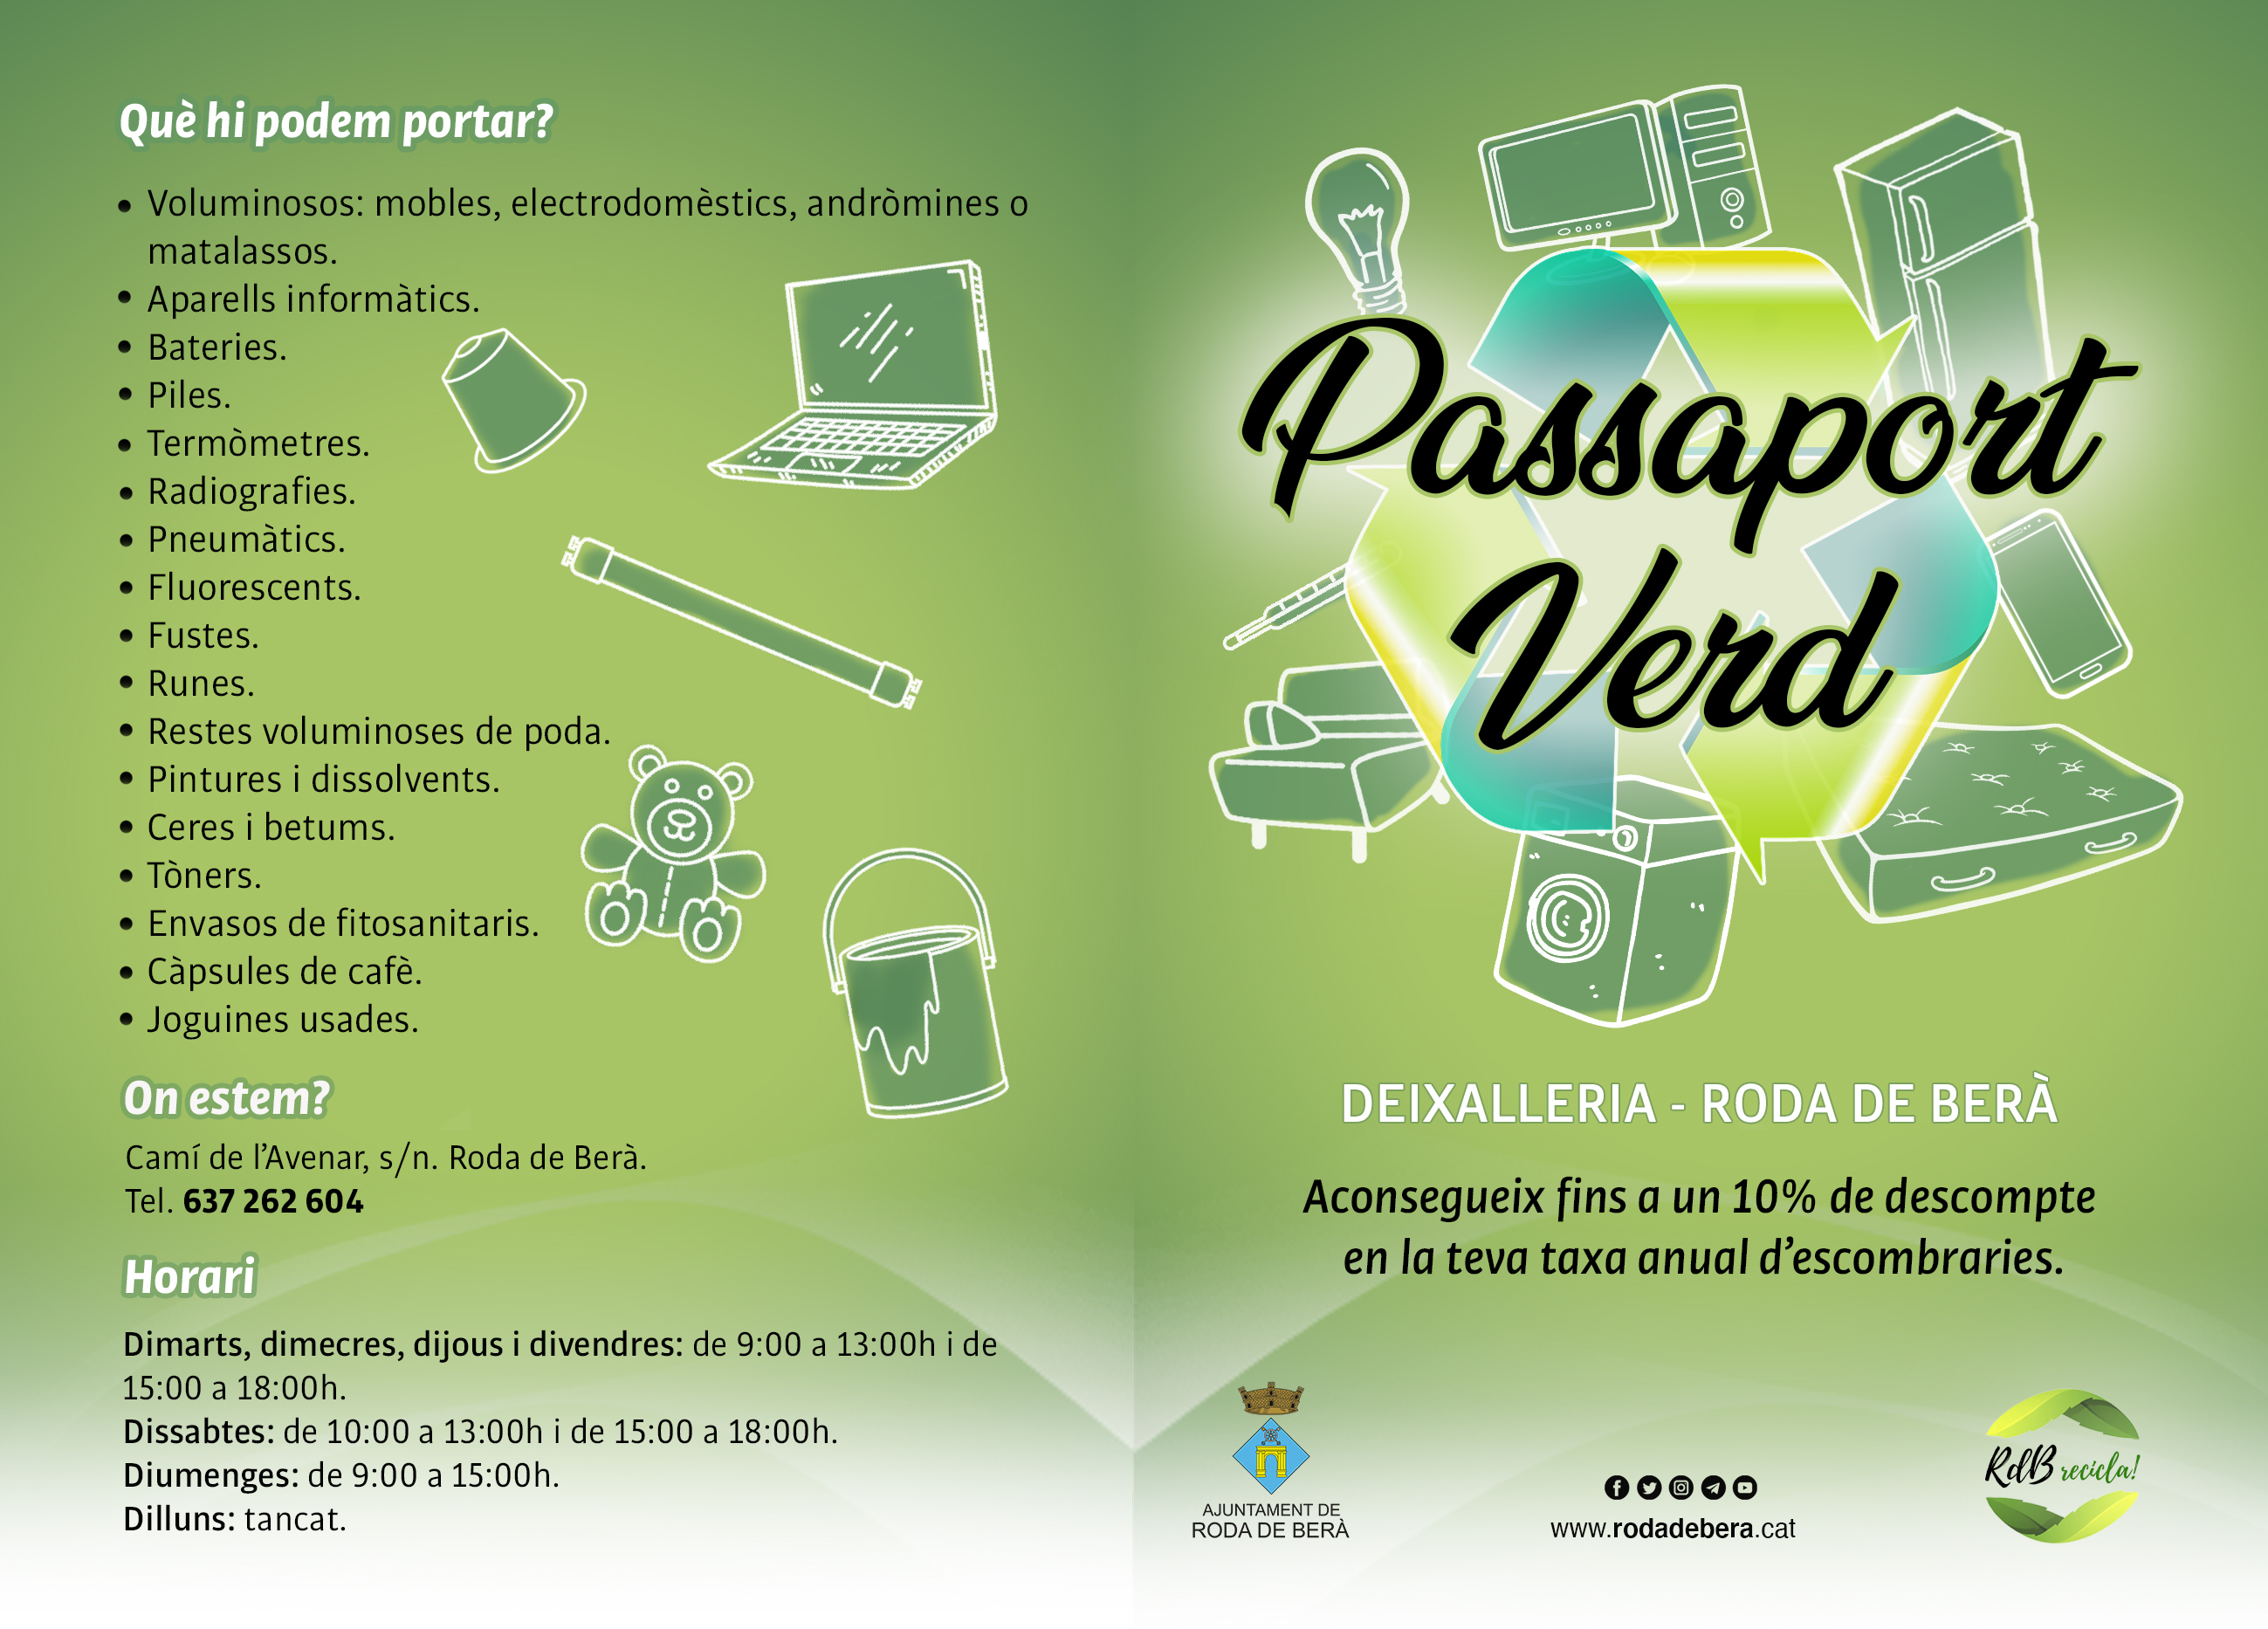 Passaport verd